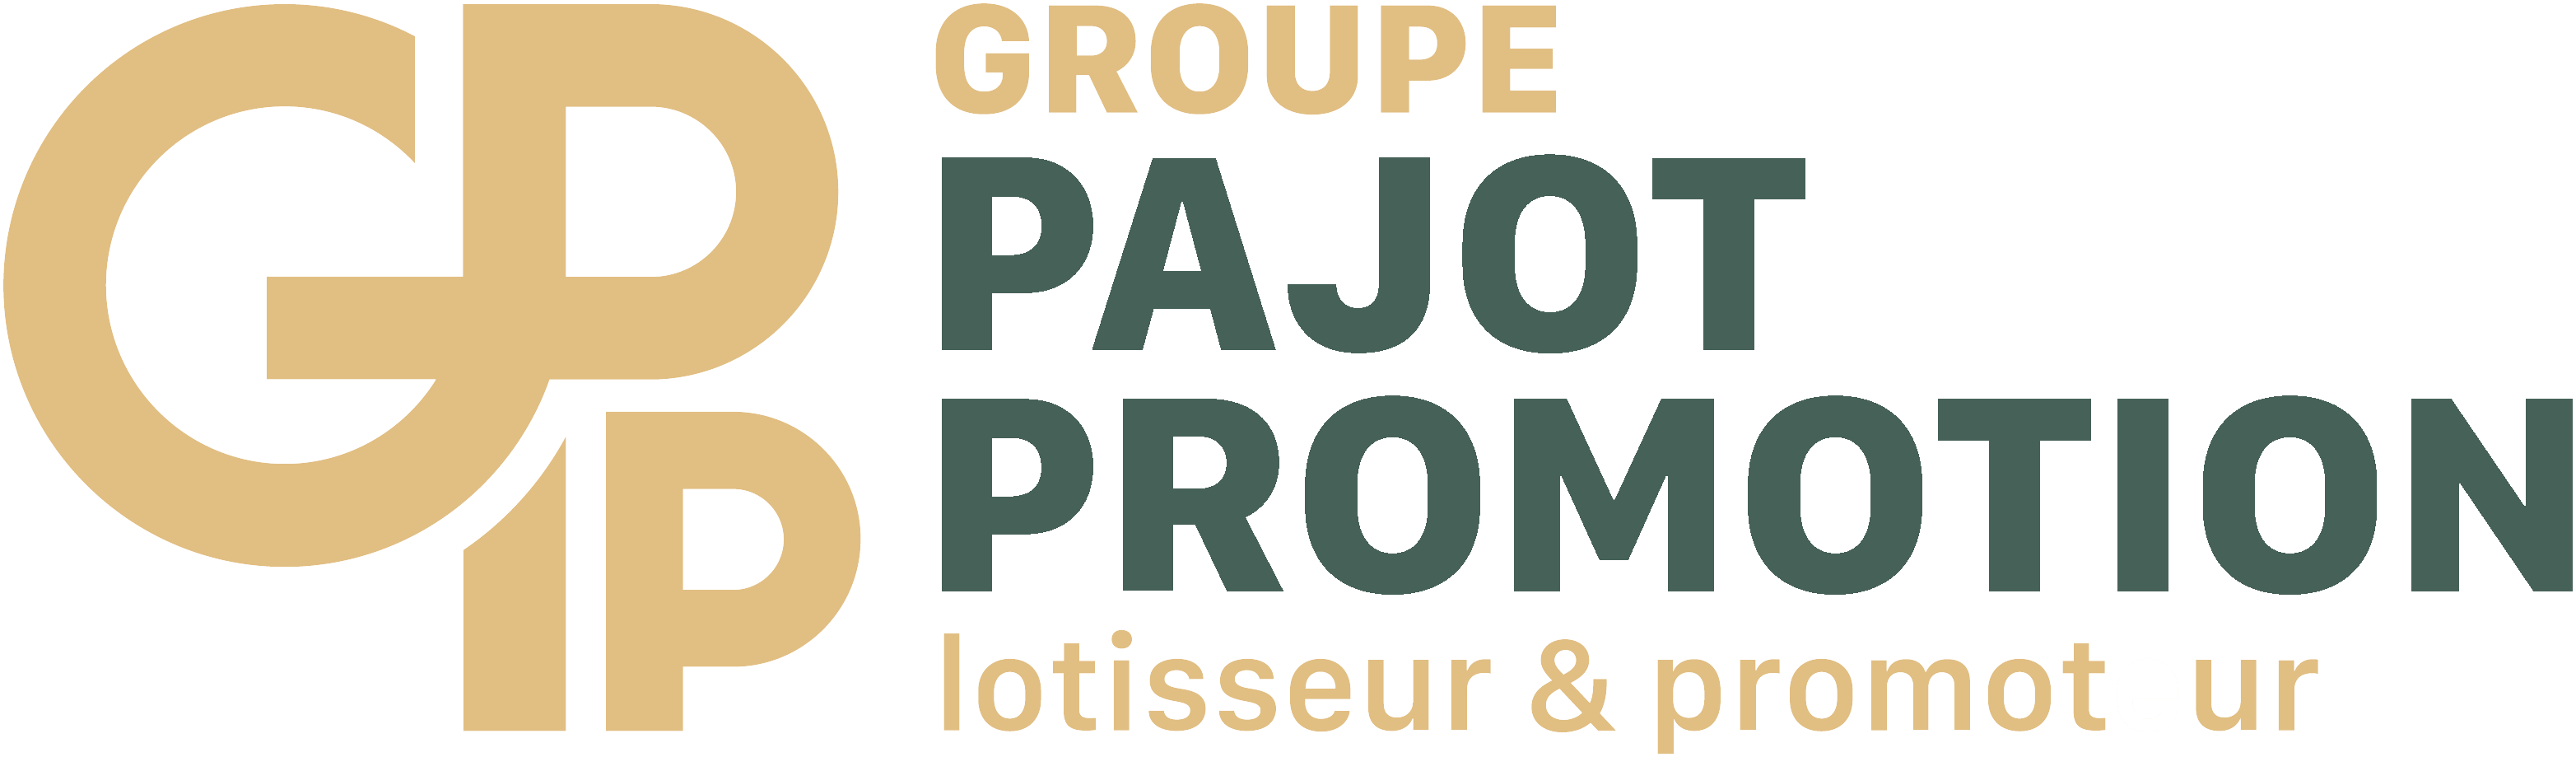 Pajot Promotion - Les Iris - 3ÈME